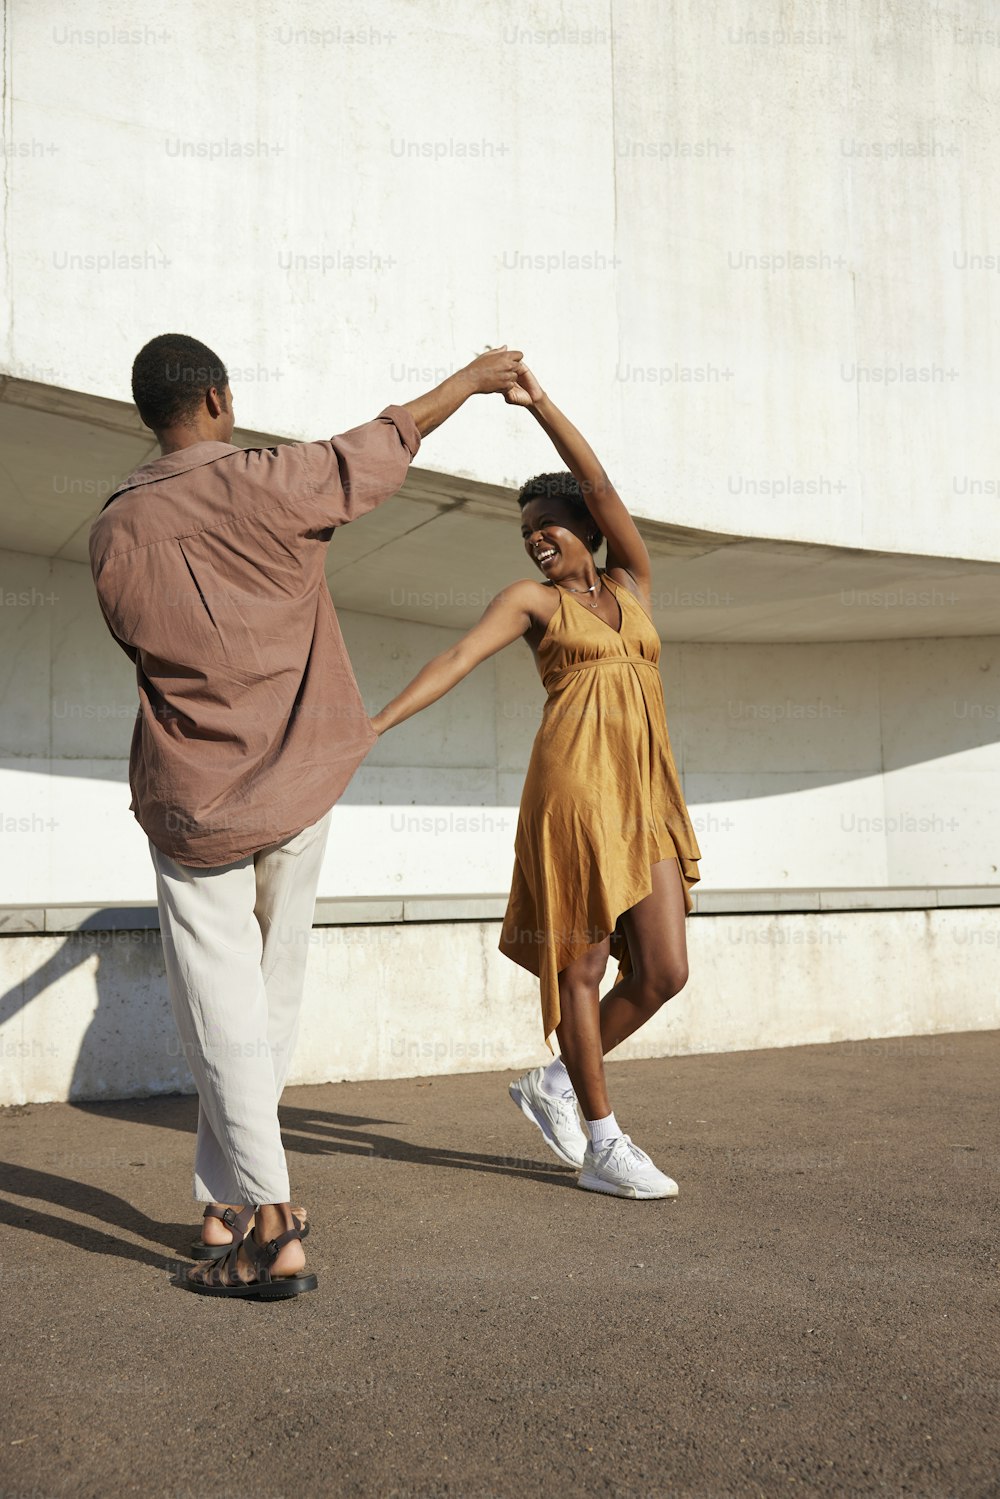 Un hombre y una mujer bailando juntos frente a un edificio